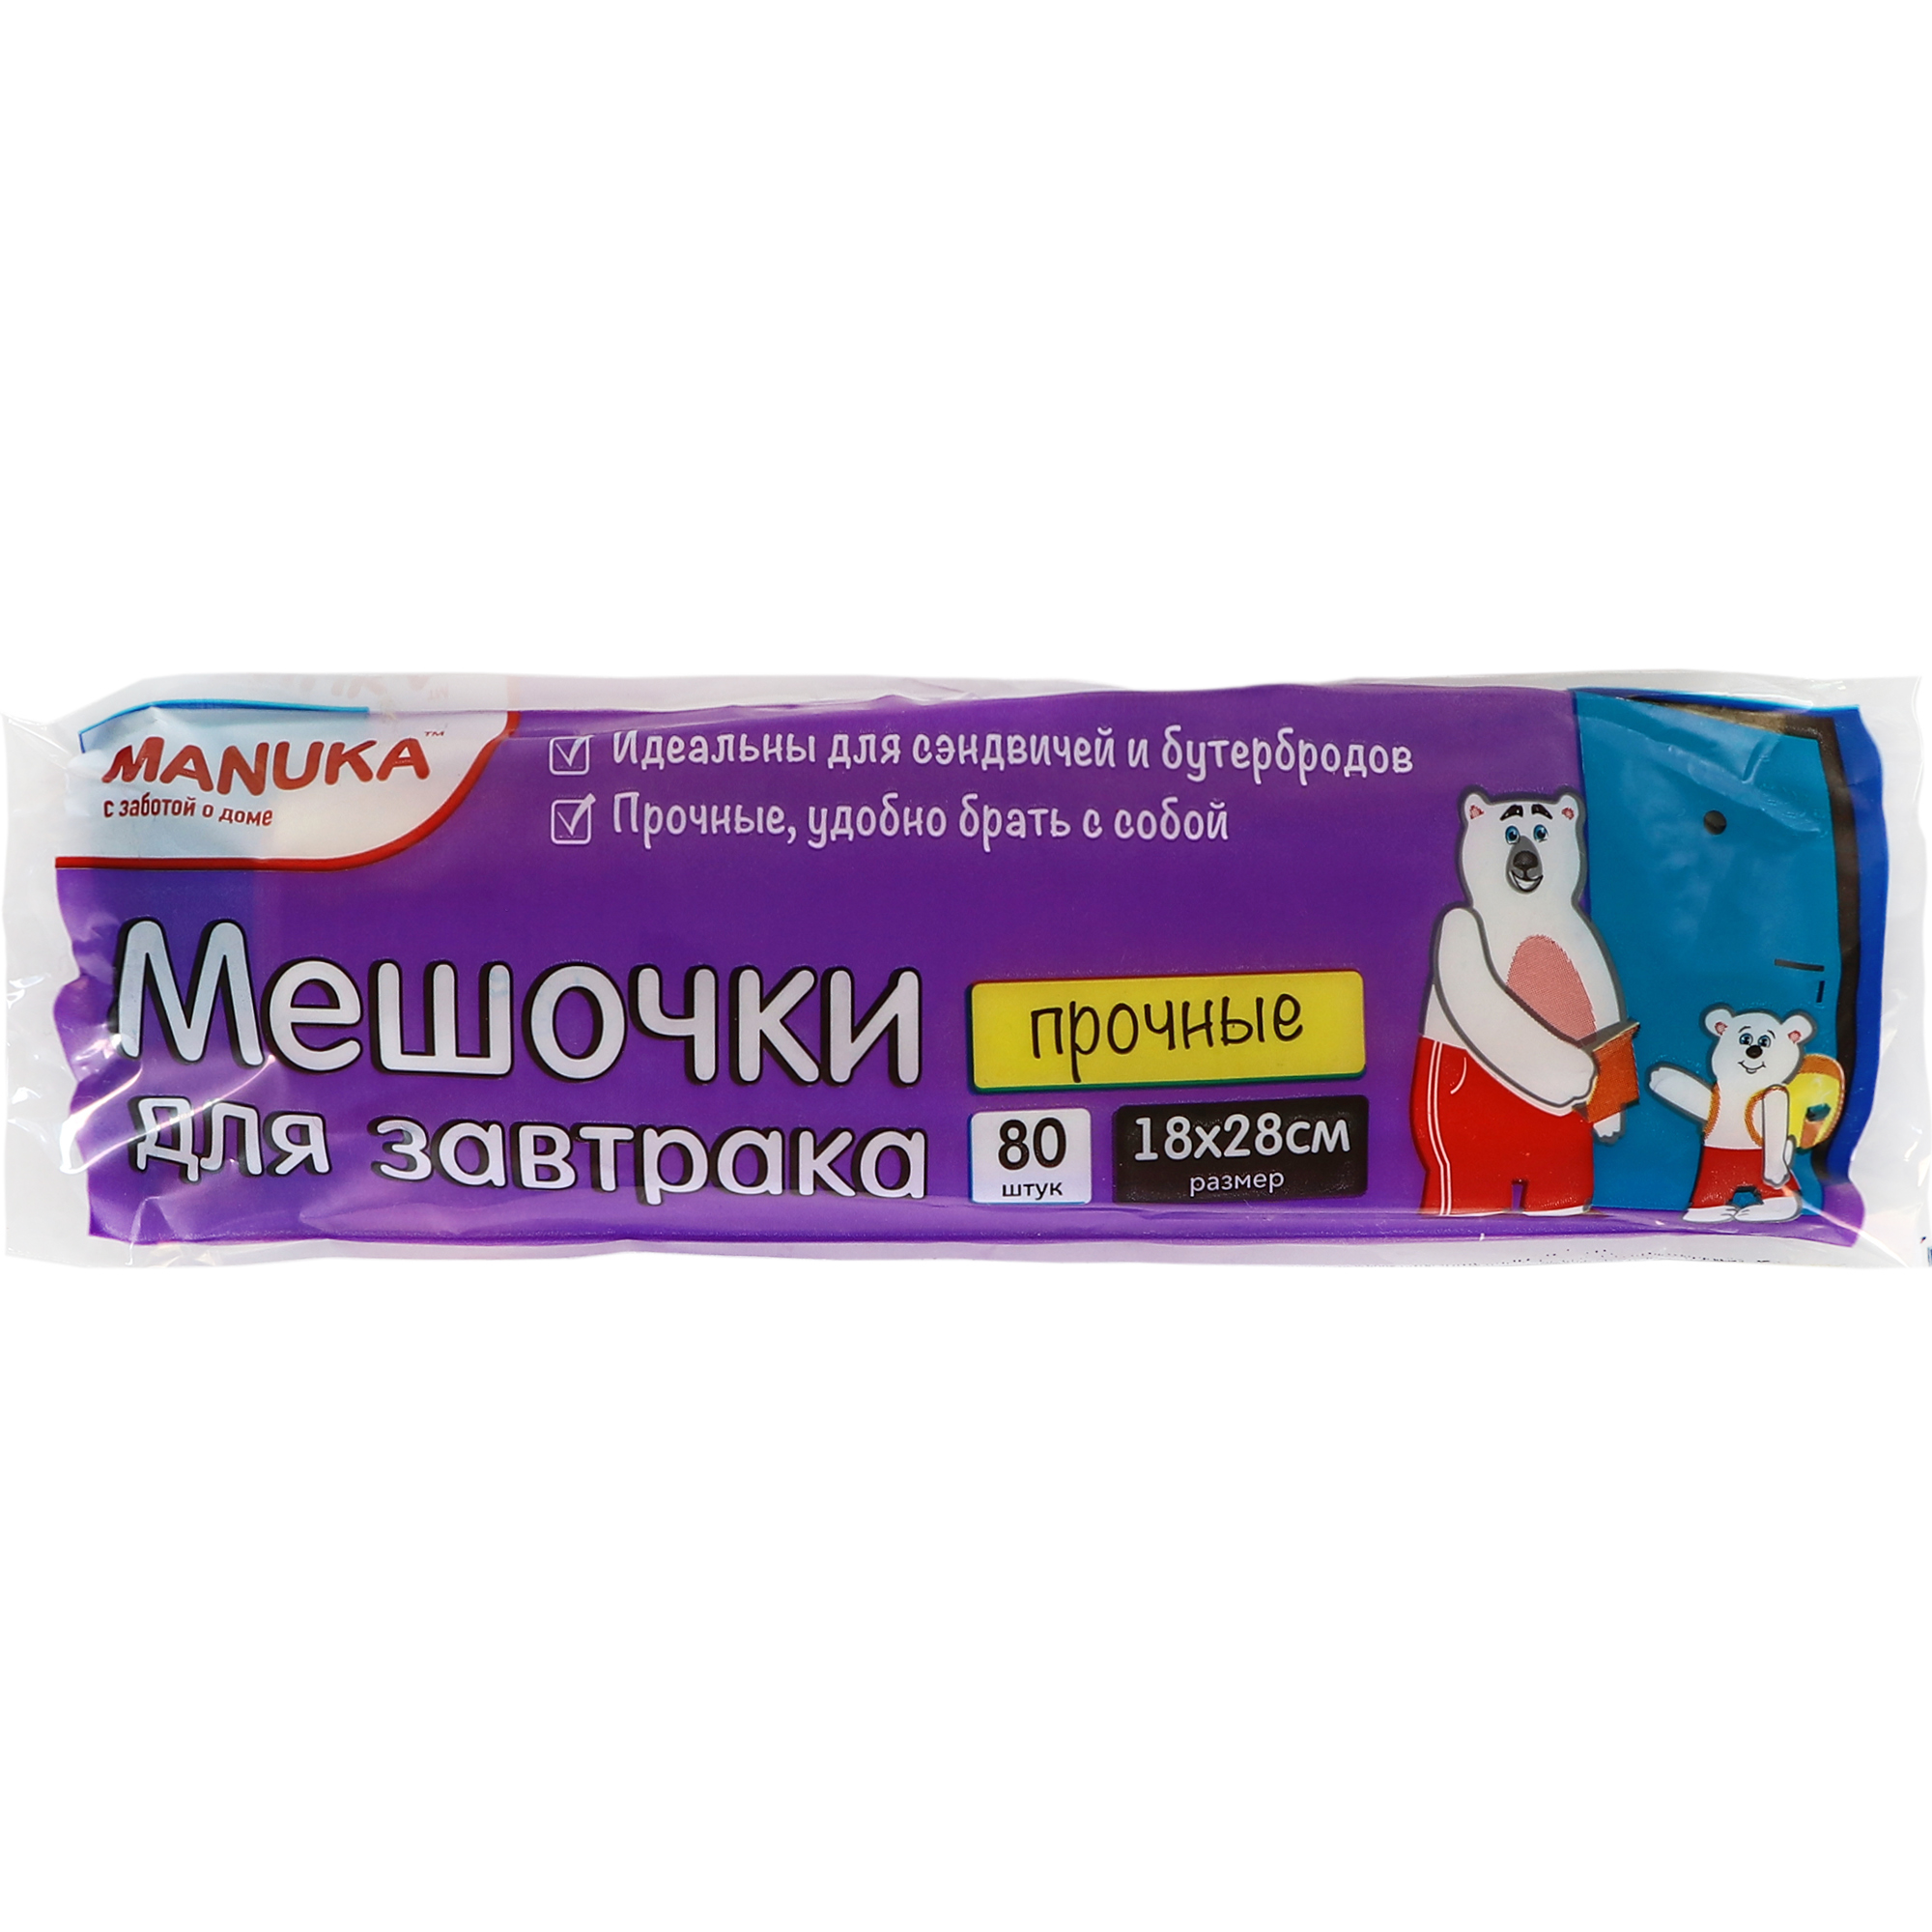 Пакеты для завтраков Manuka 18х28 см 80 шт